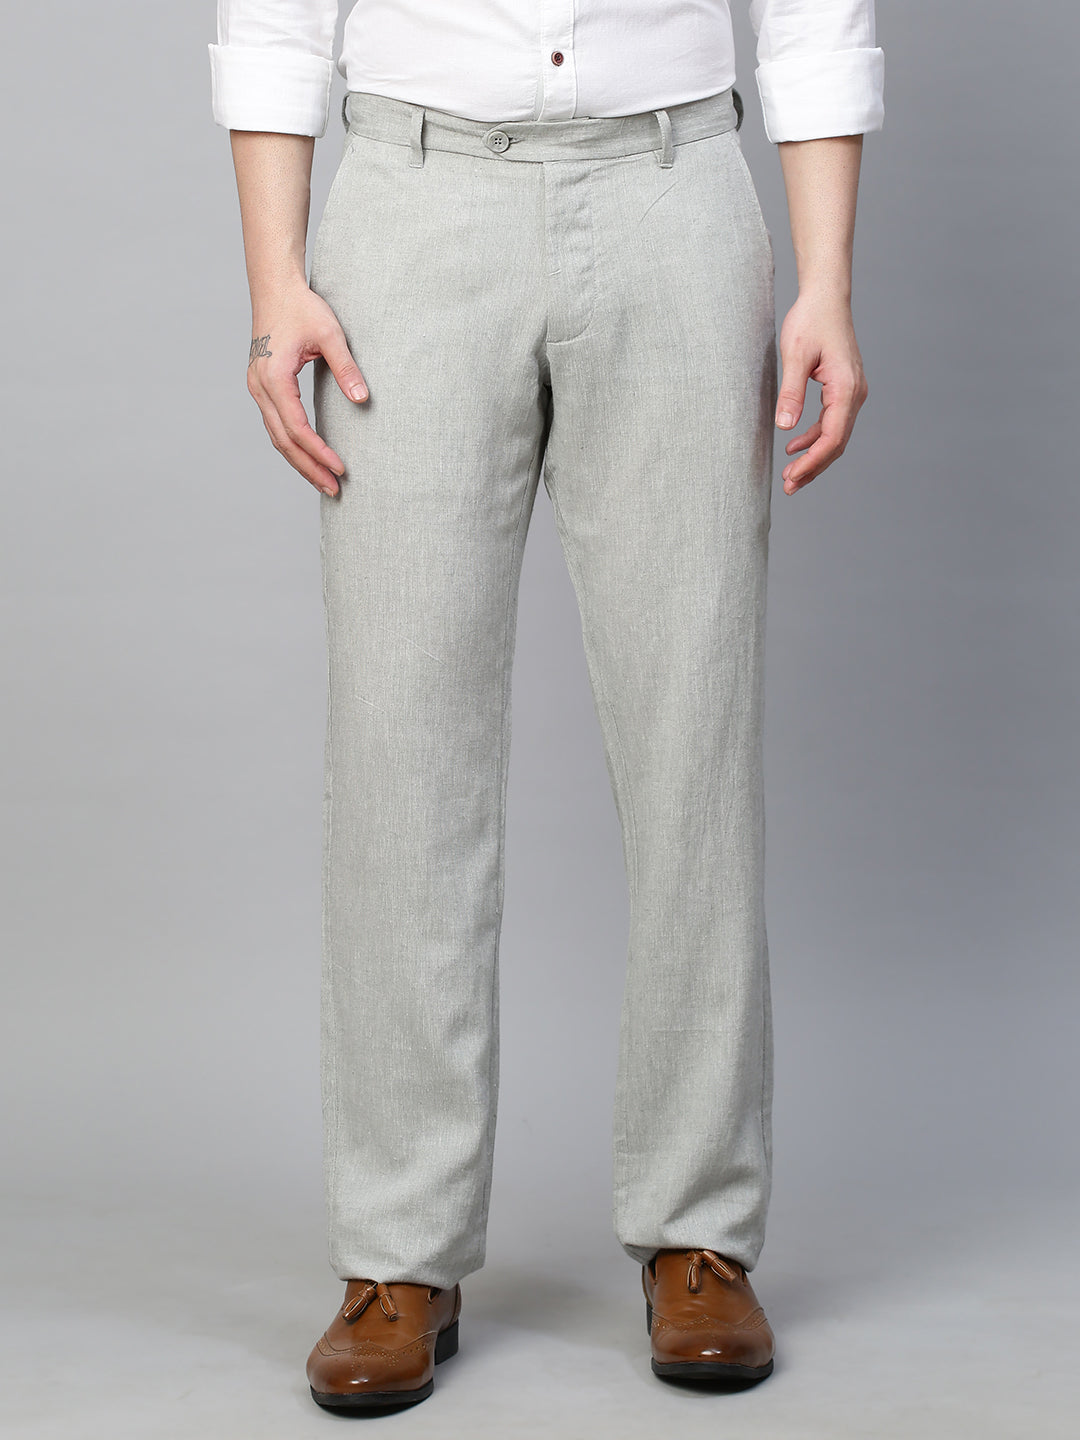 Buy Men's Linen Casual Wear Regular Fit Pants|Cottonworld